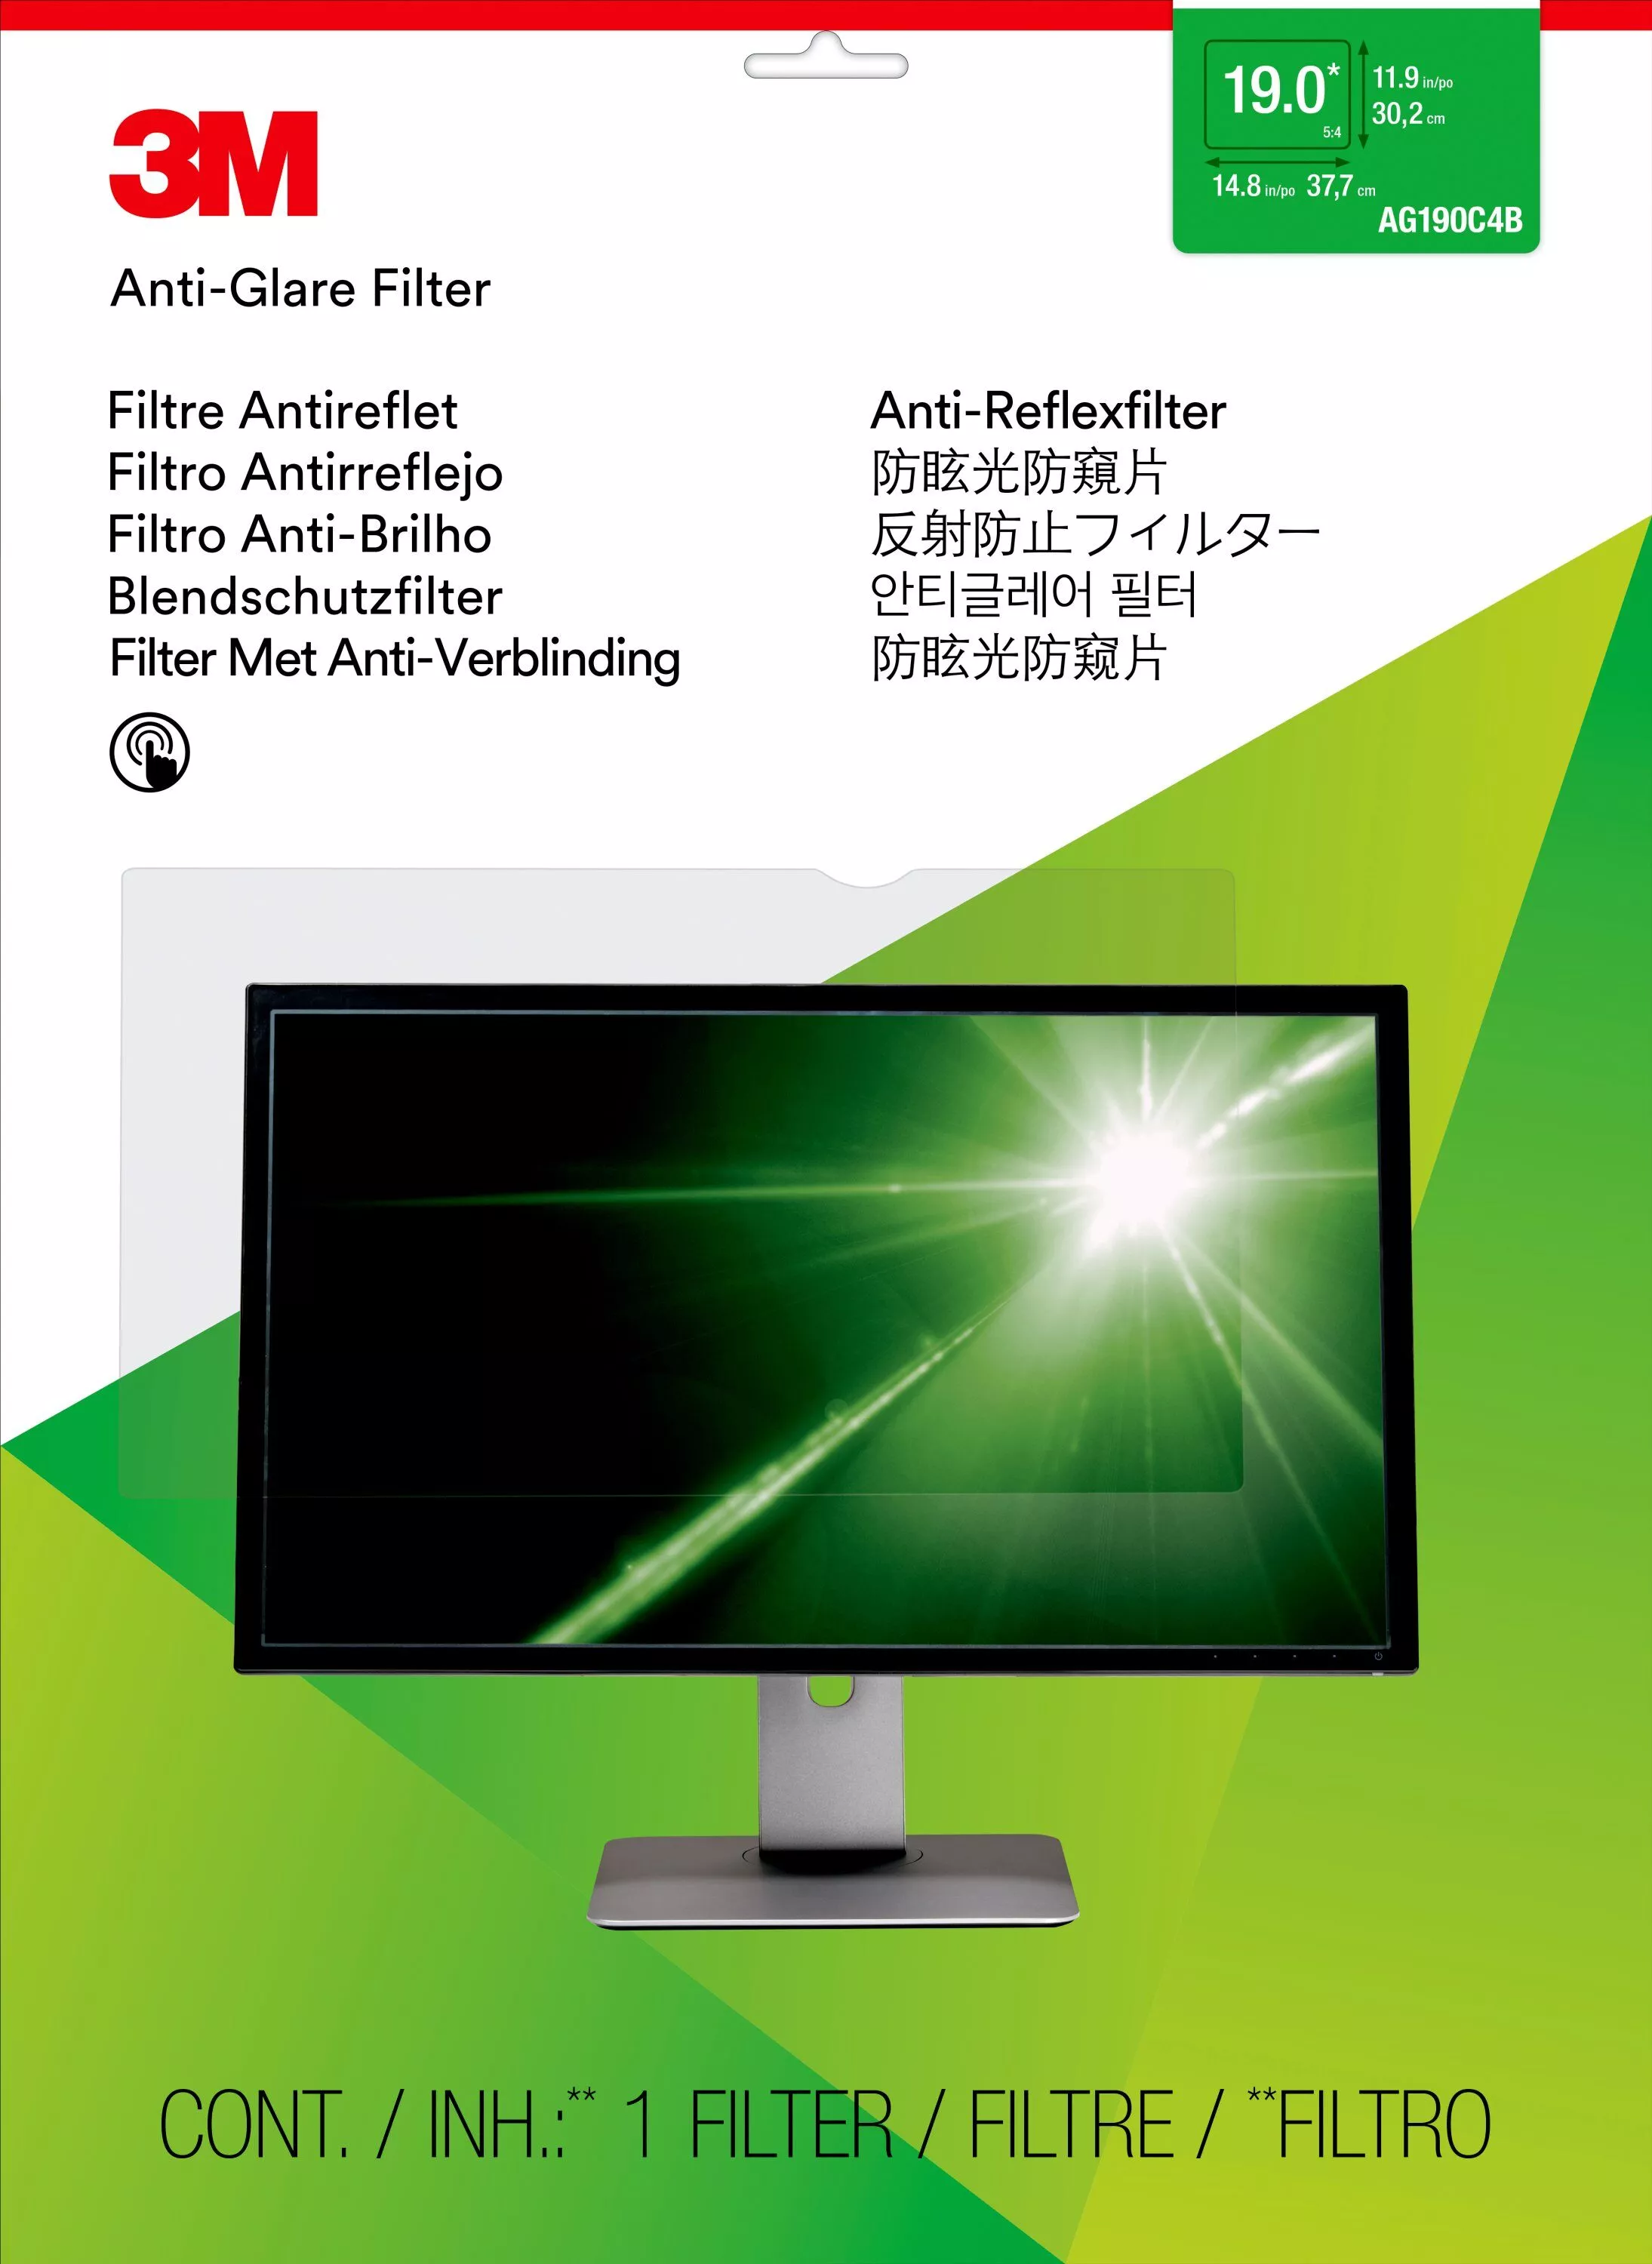 Vente 3M AG19.0 Filtre de protection anti-reflets pour 19.0in 3M au meilleur prix - visuel 2